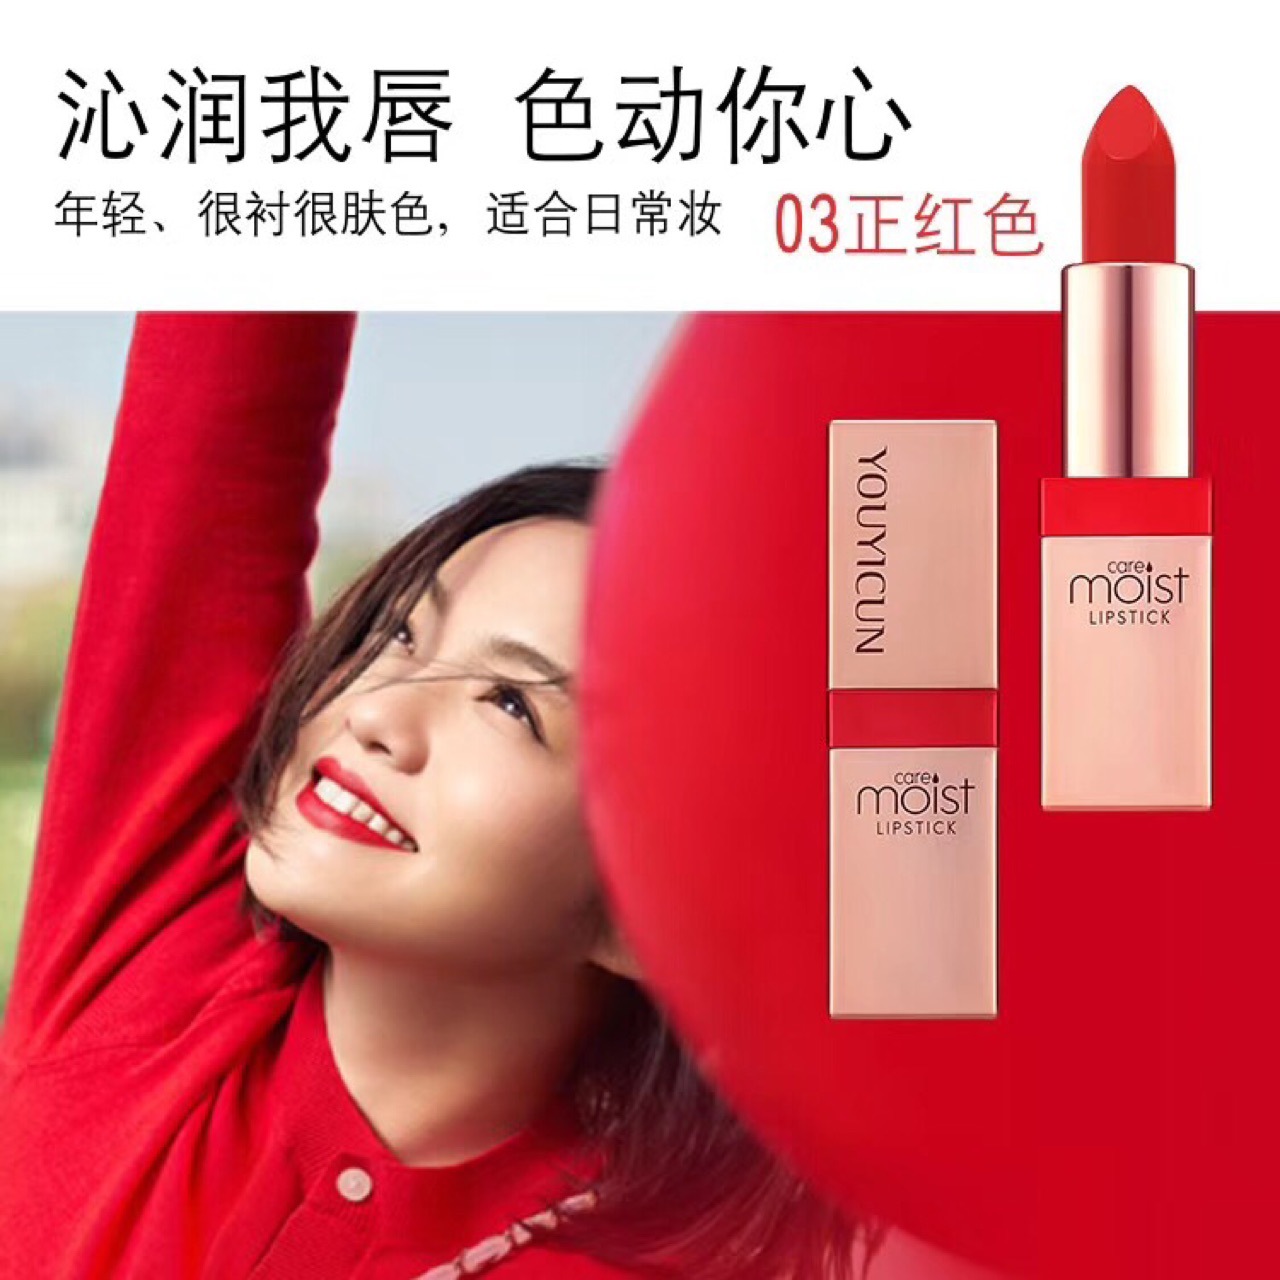 上海霞丽化妆品有限公司